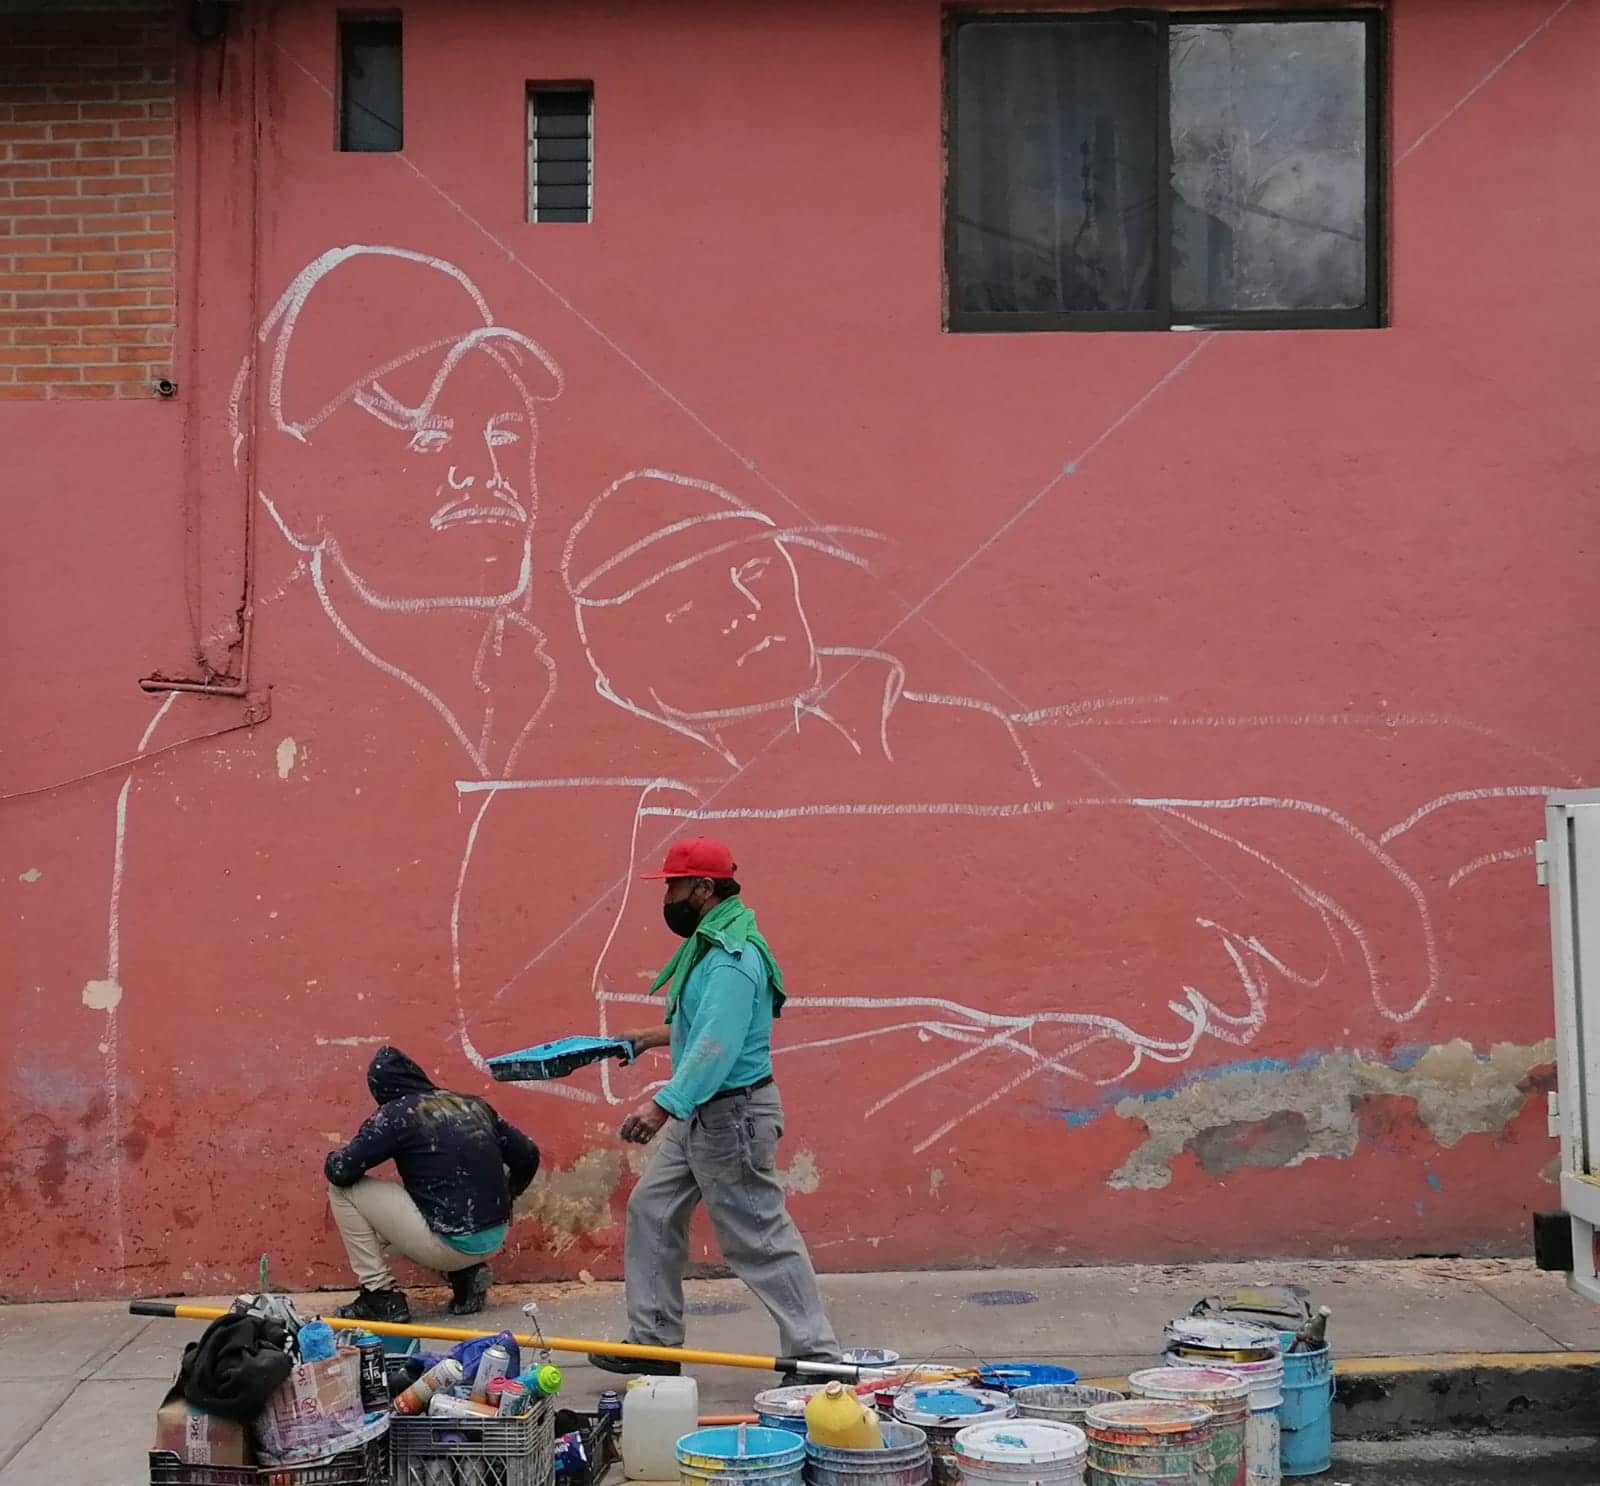 Historias de habitantes de Iztapalapa inspiran a artista urbano y las plasma en murales.